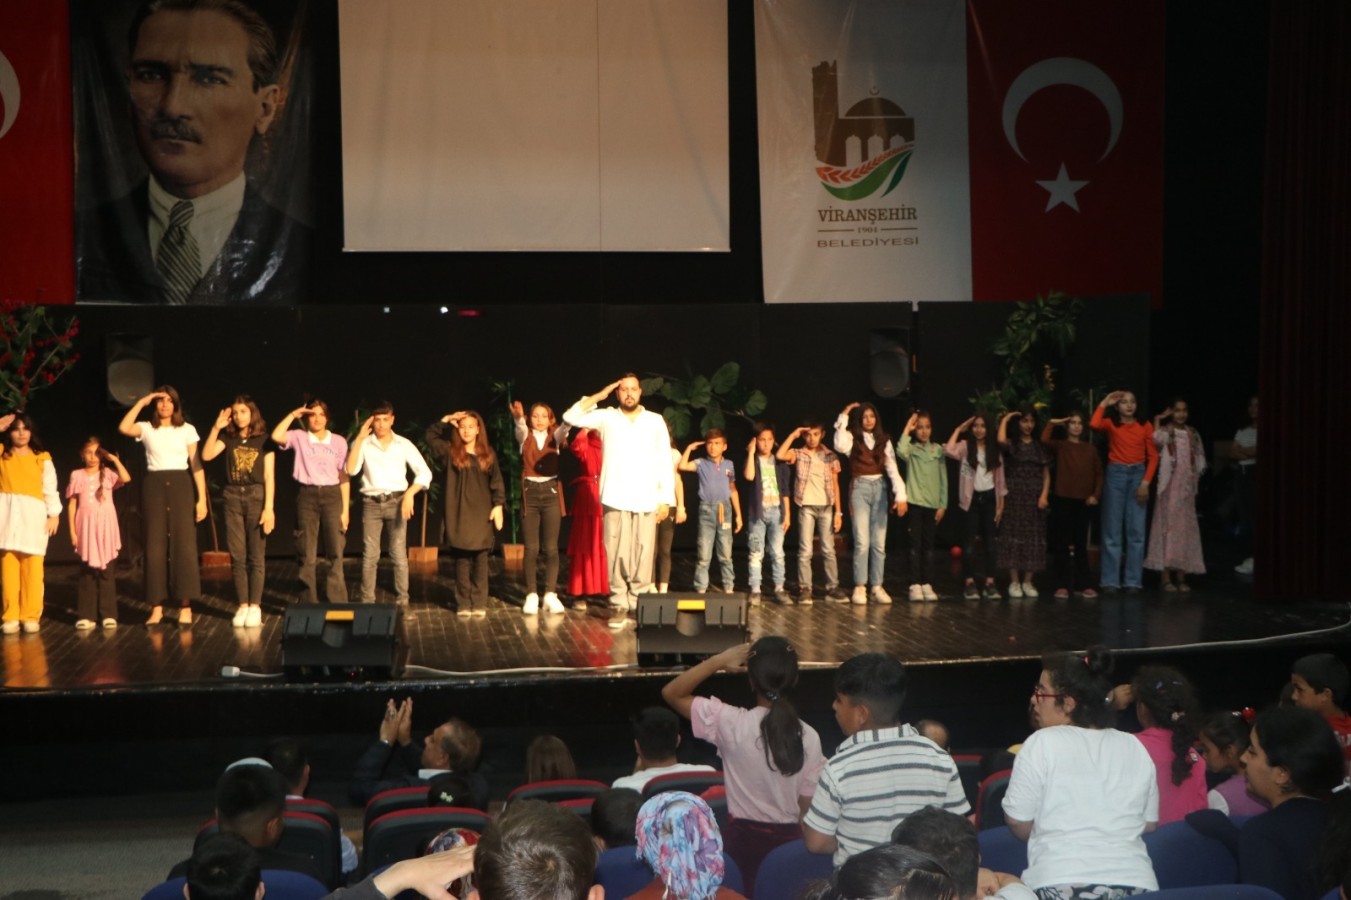 Viranşehir Belediyesi'nden "özel öğrencilere" tiyatro gösterisi